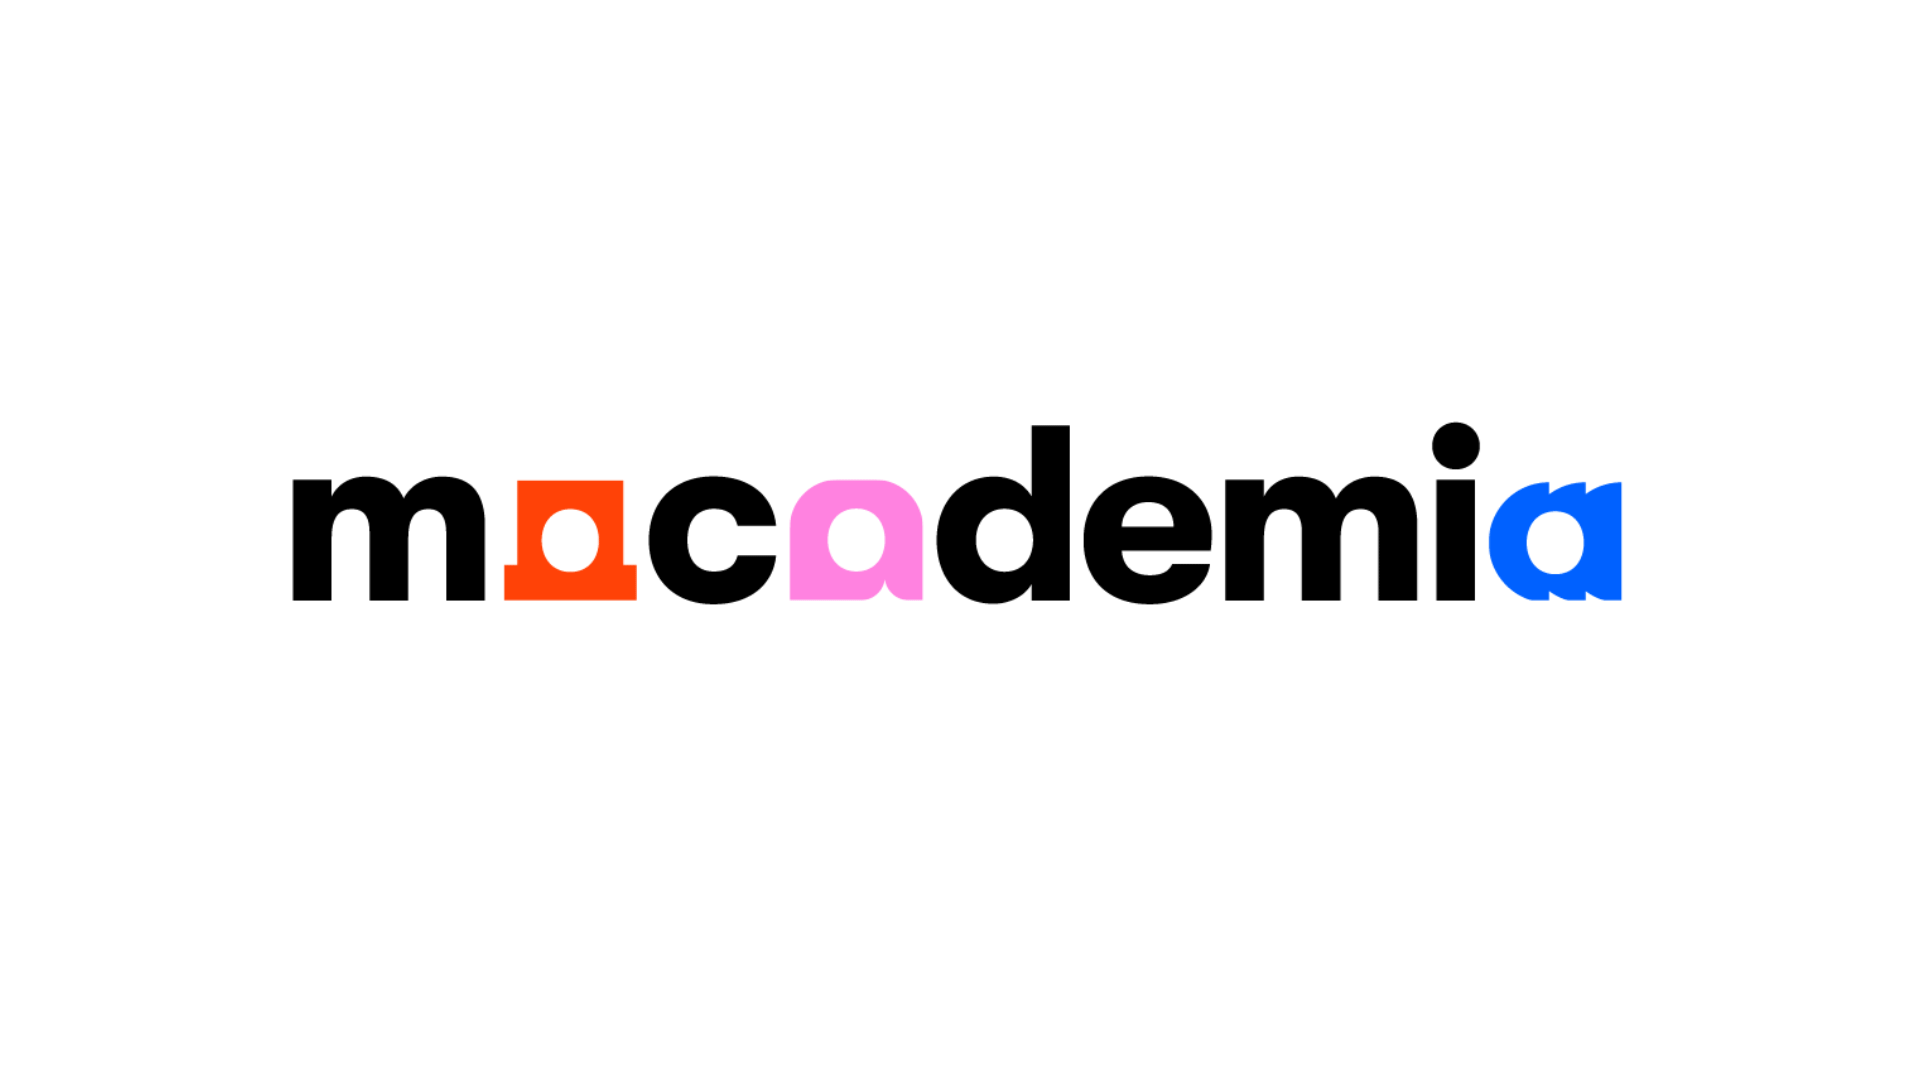 Macademia_Logo animation_landscape